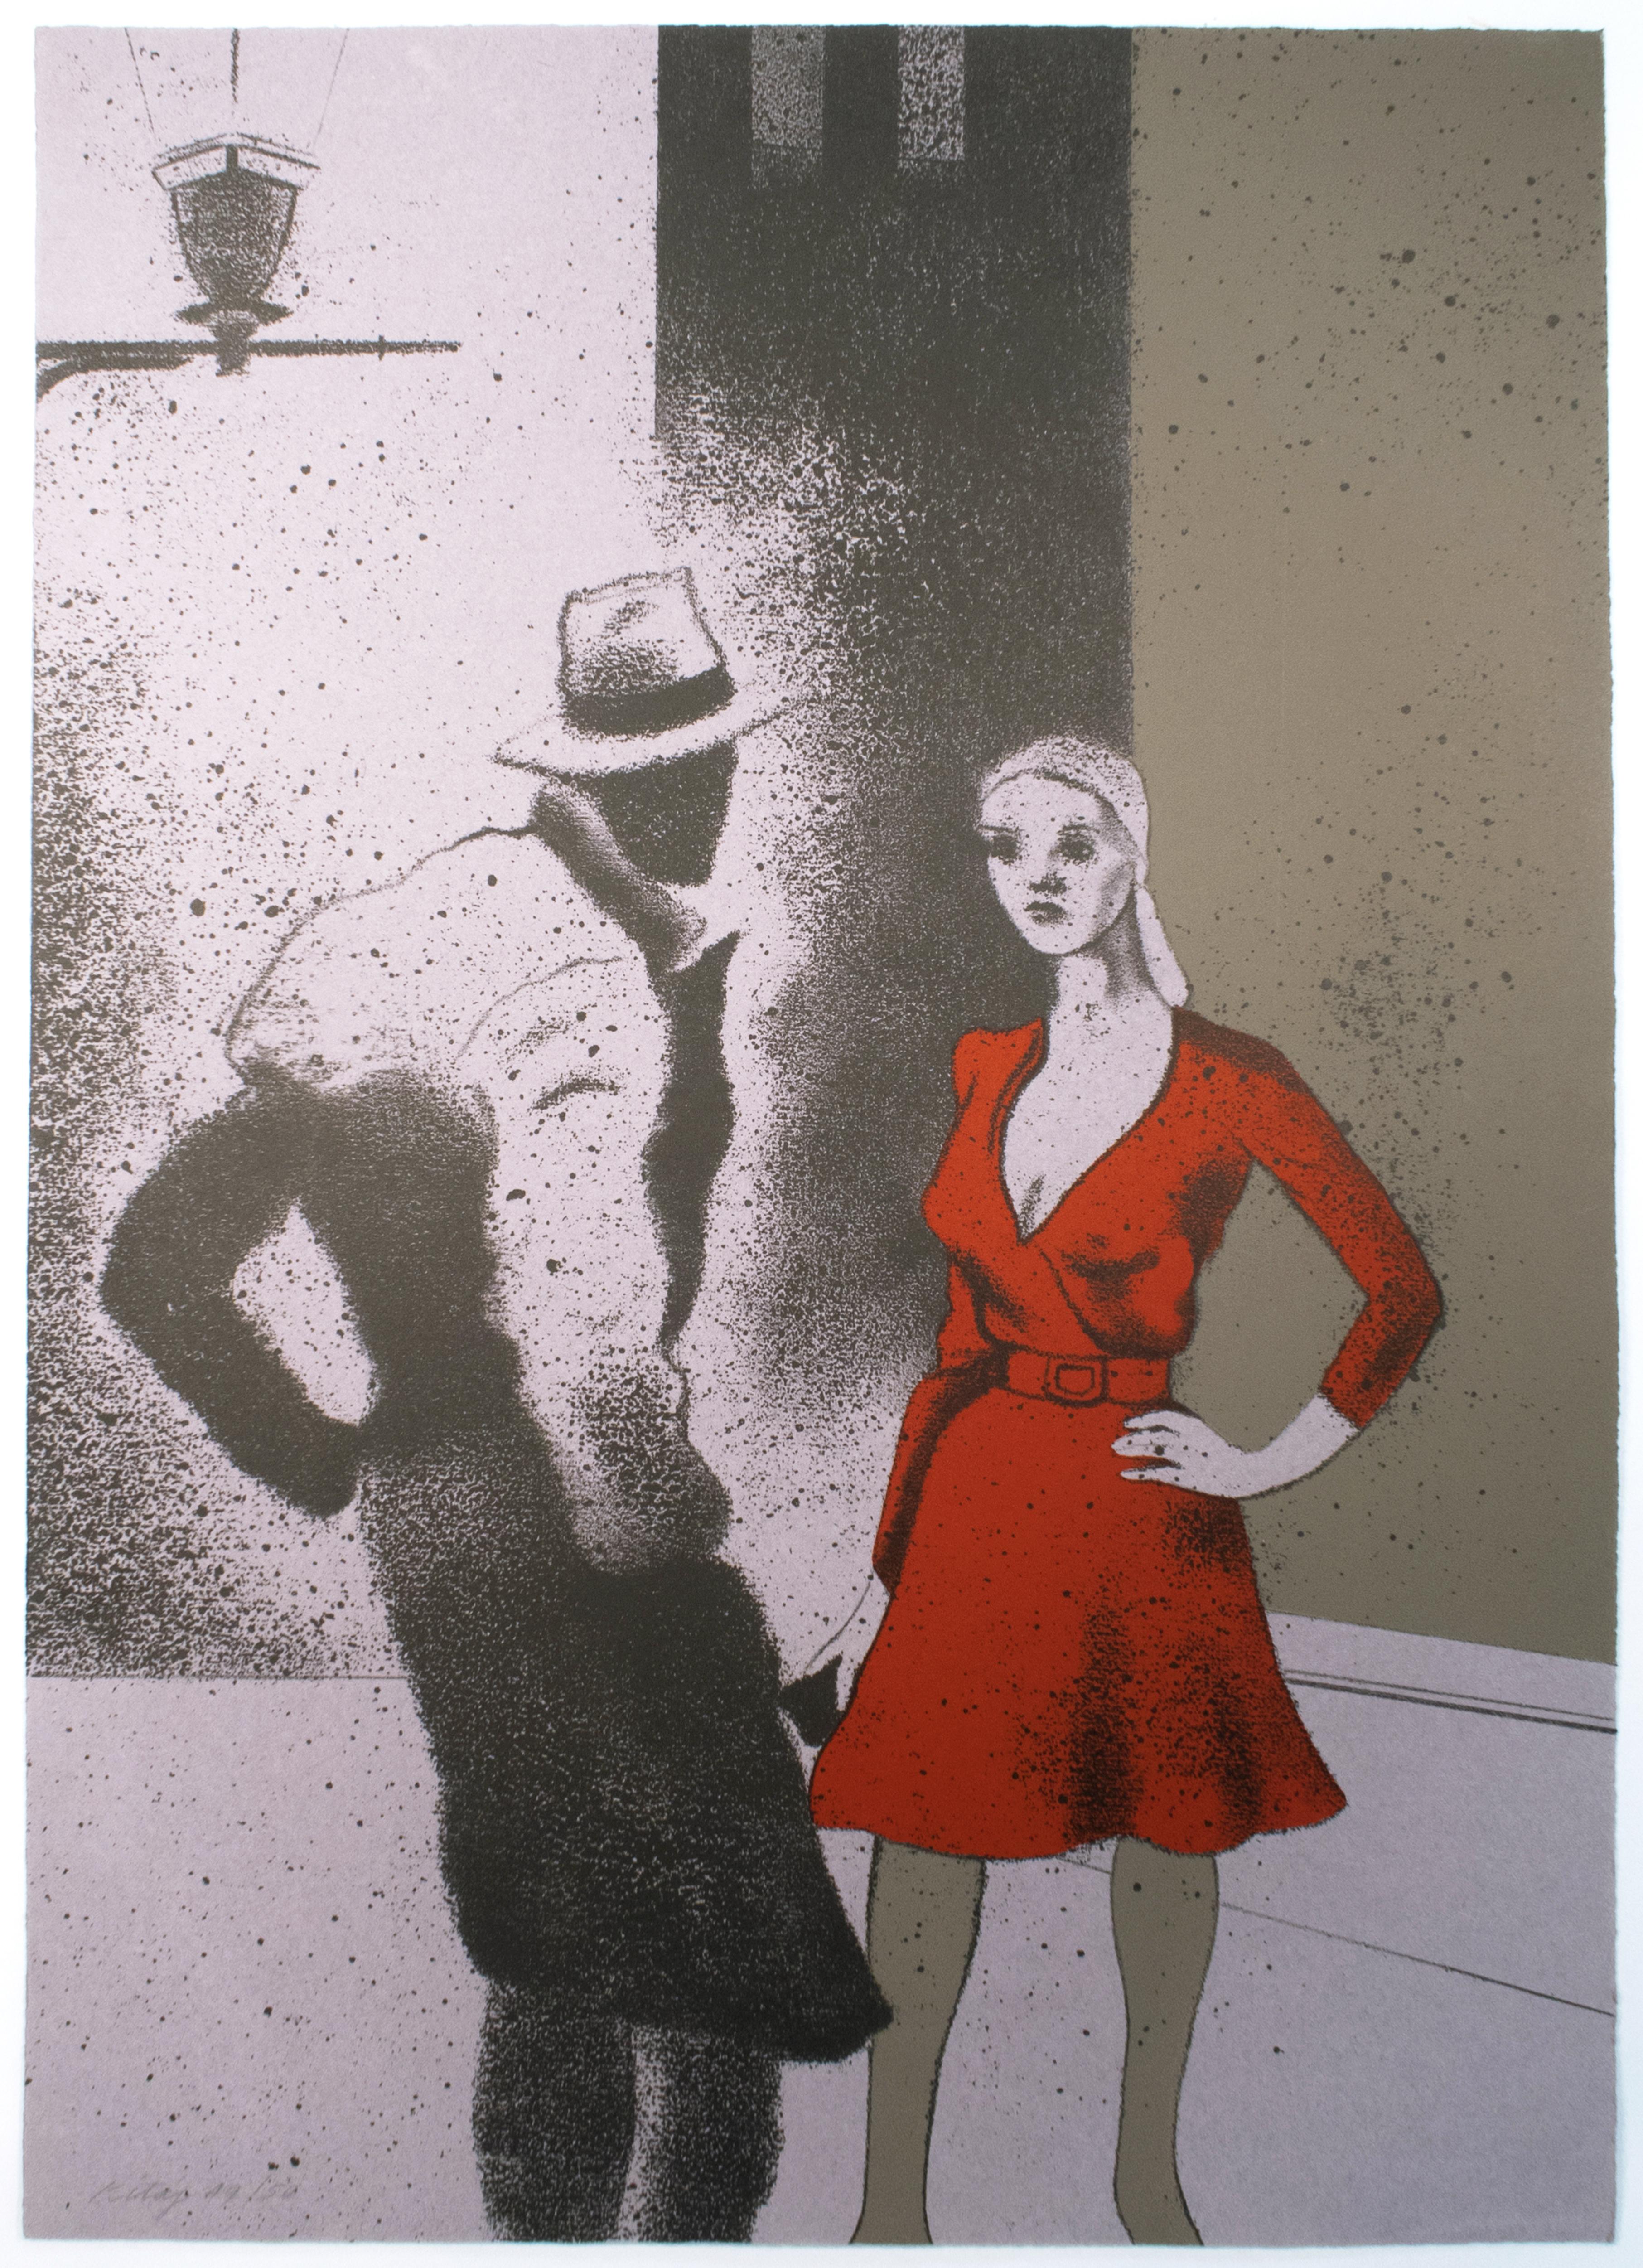 Ronald Brooks Kitaj Portrait Print - A Life (B) R.B. Kitaj Film noir night city scene of woman in red dress 